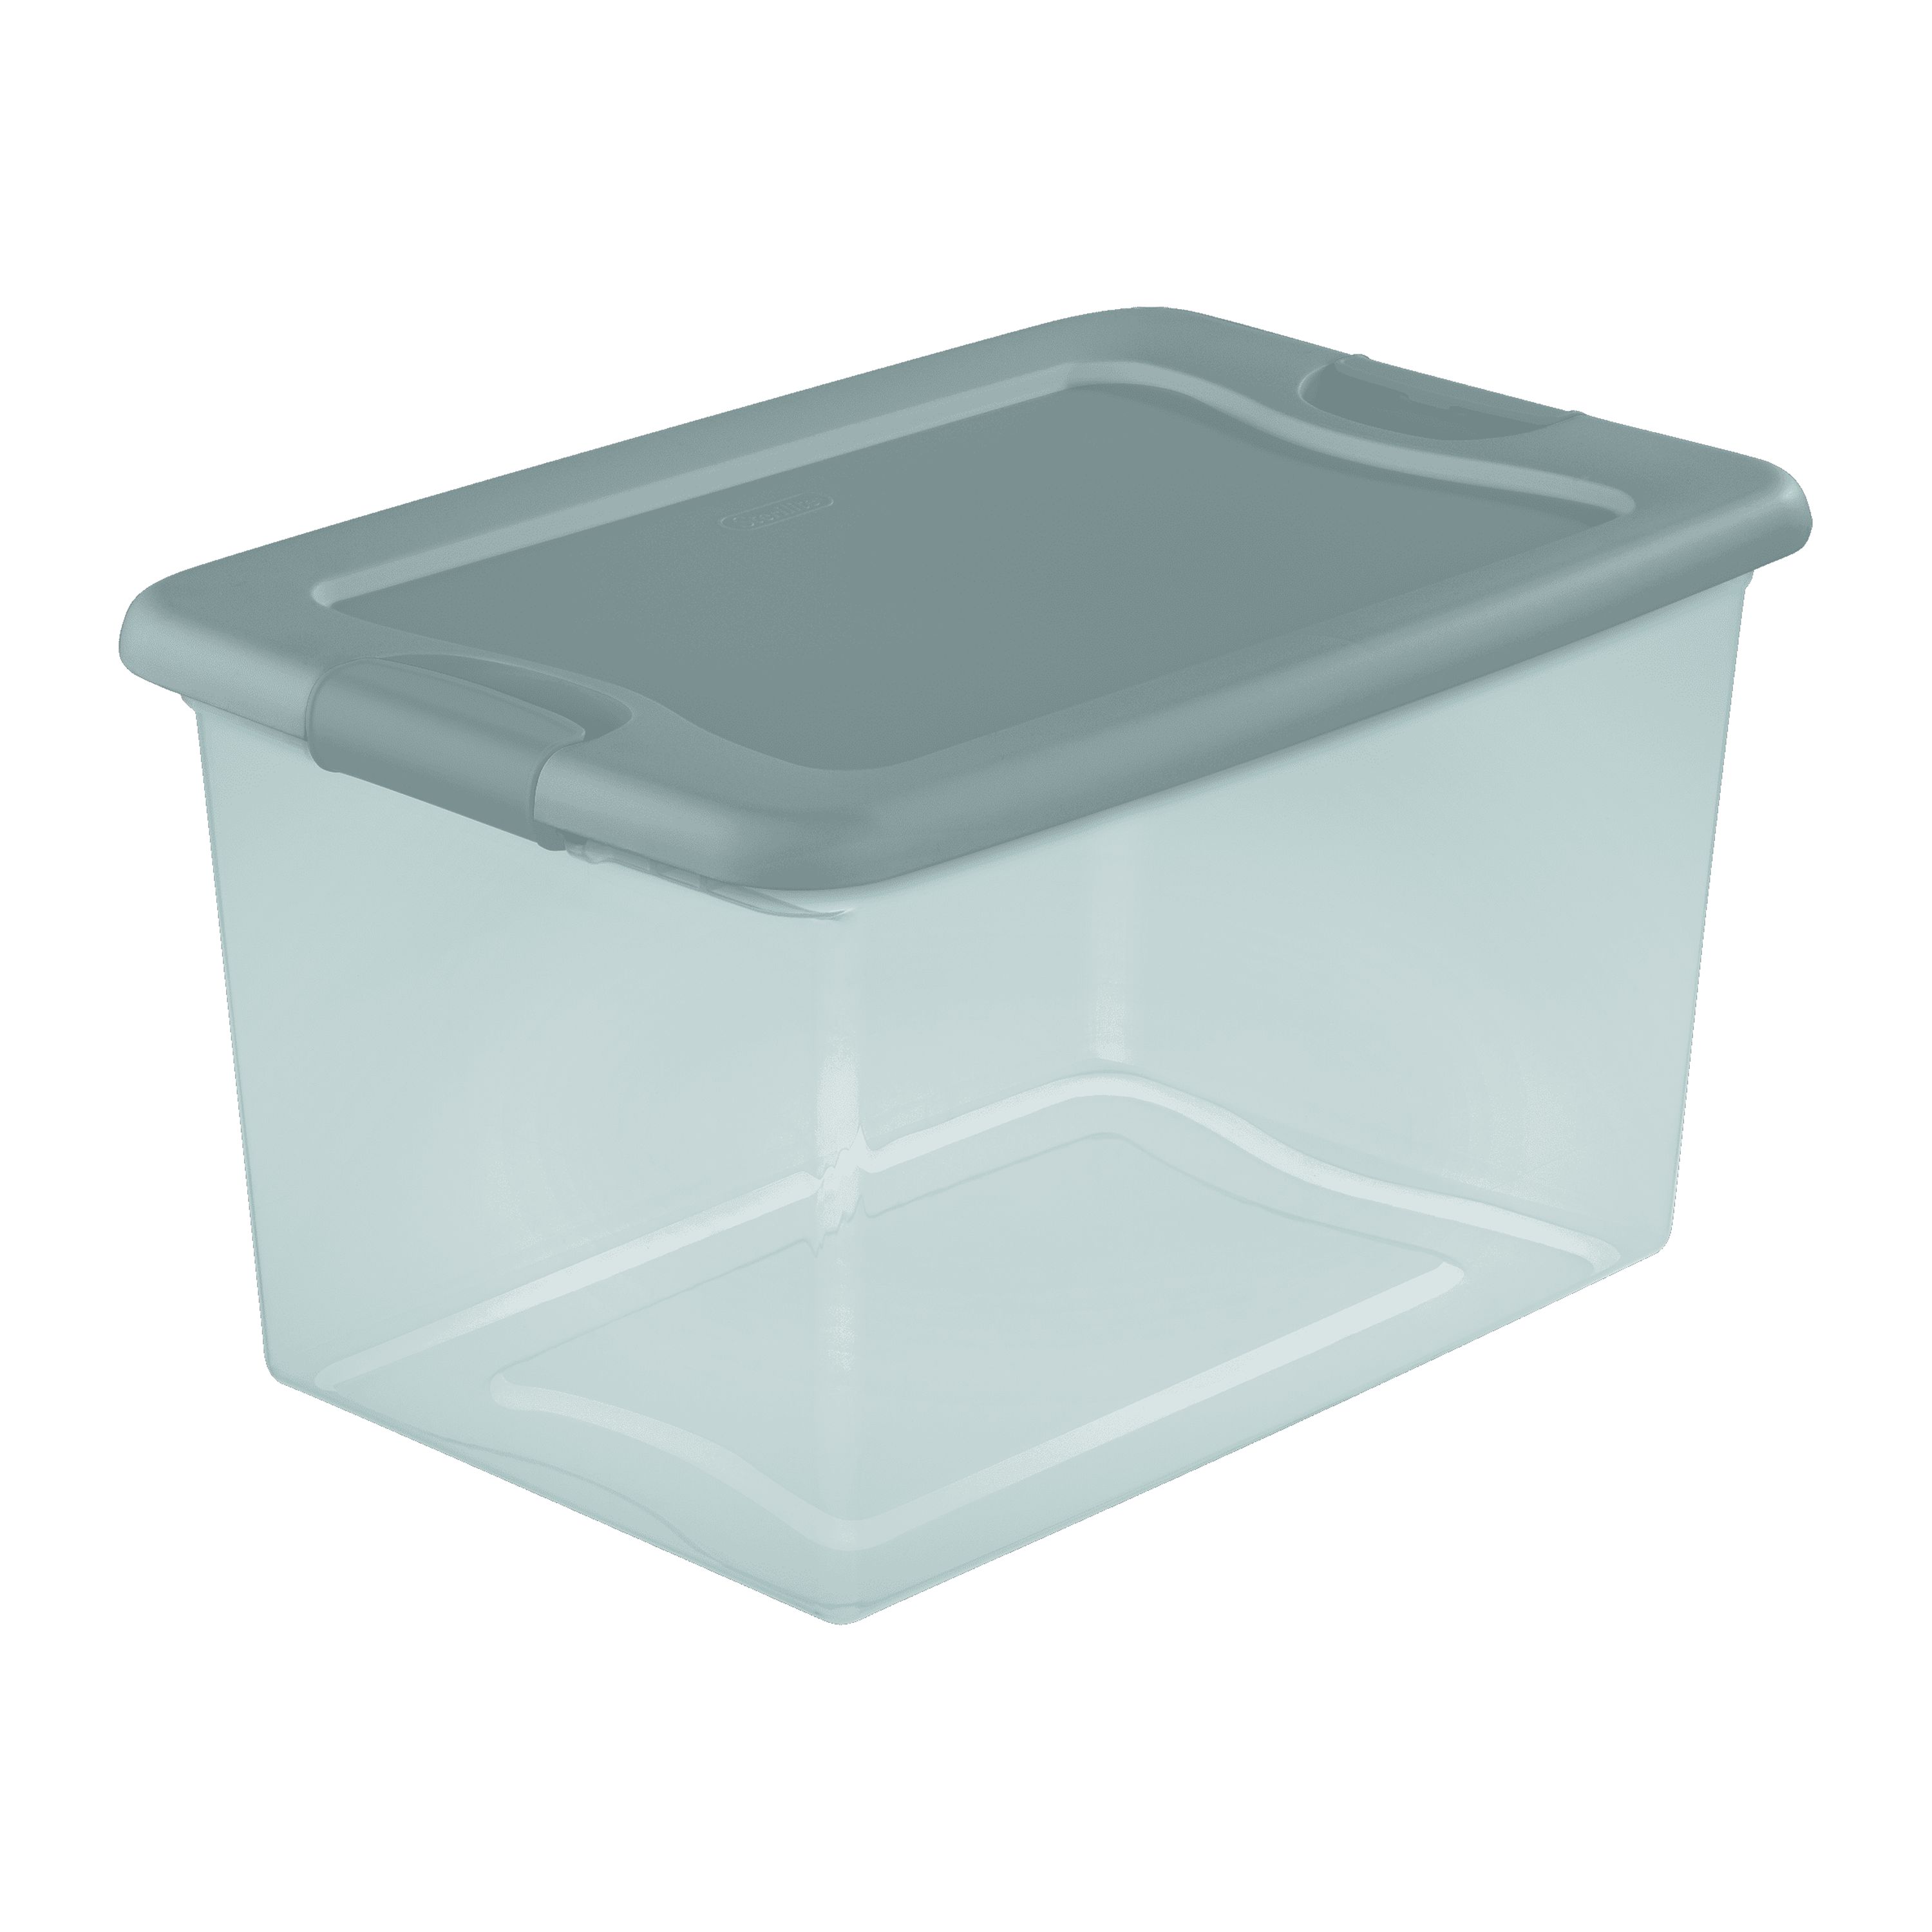 Sterilite 64 Qt. Latching Box Plastic, Aqua Slate Tint - image 3 of 4